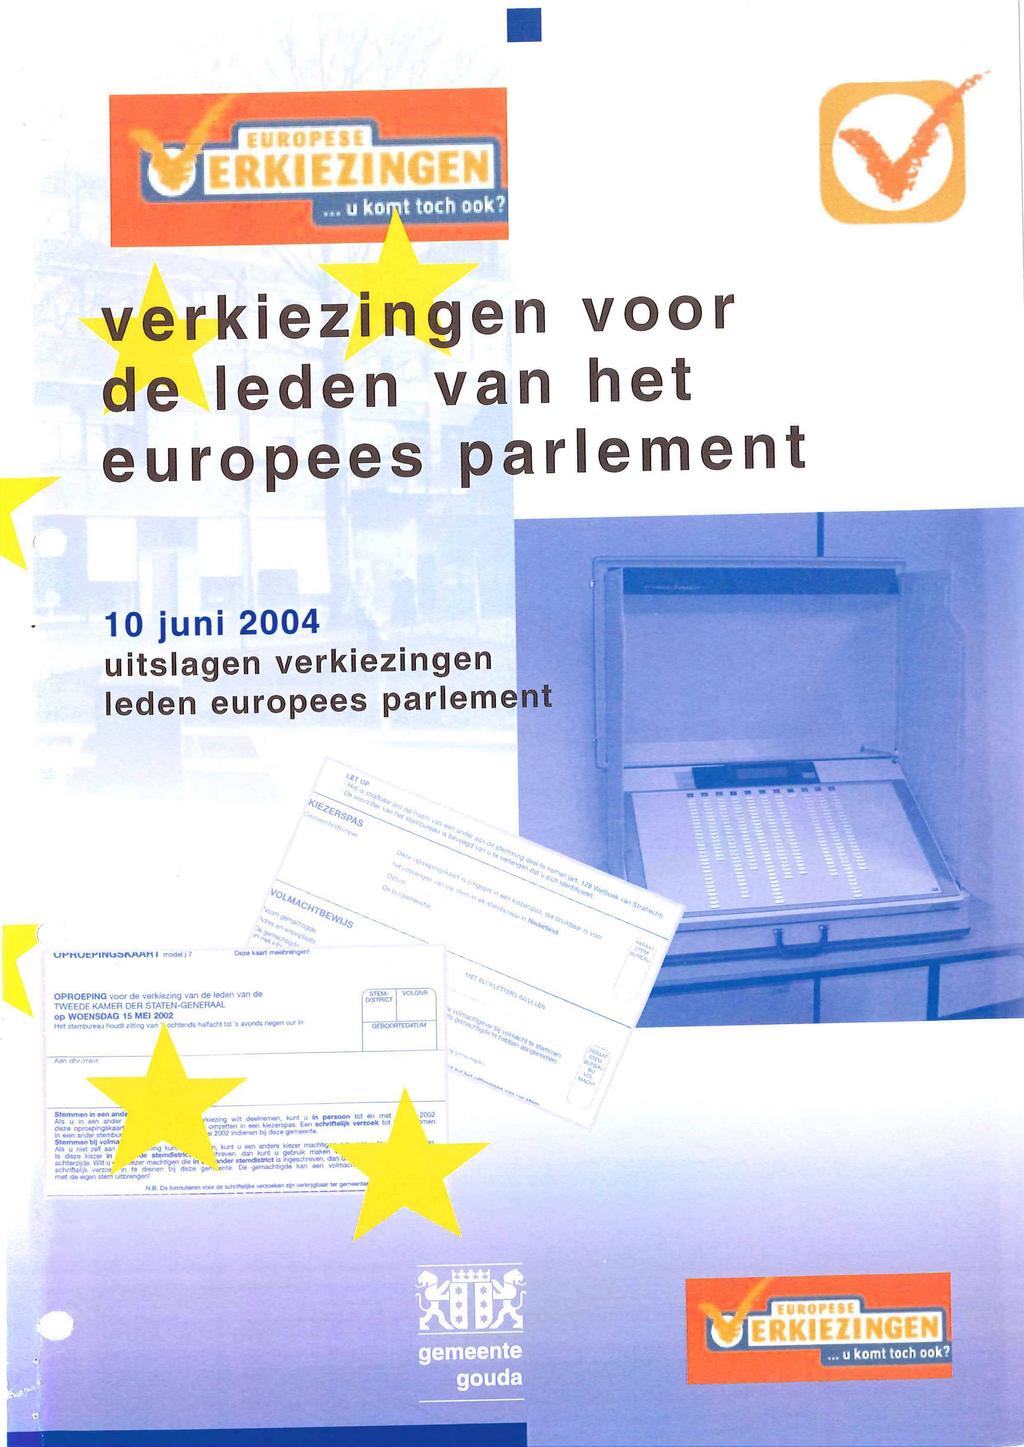 II ERKIEZINGEN verkiezi ngen voor de leden van het europees parlement 10 juni 2004 uitslagen verkiezingen leden europees